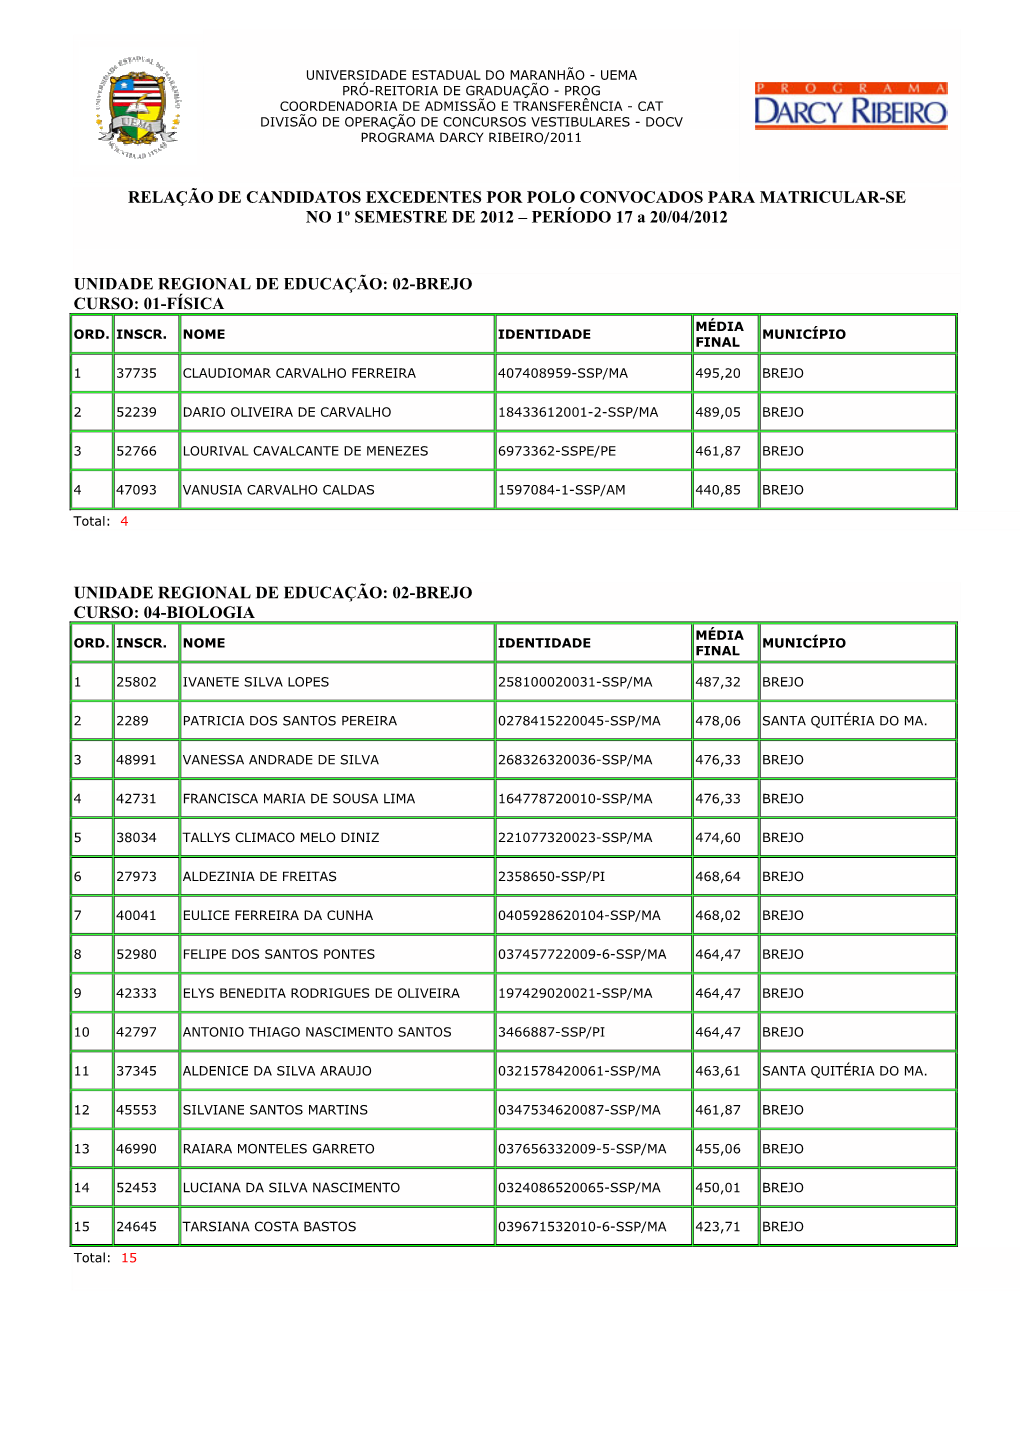 RELAÇÃO DE CANDIDATOS EXCEDENTES POR POLO CONVOCADOS PARA MATRICULAR-SE NO 1º SEMESTRE DE 2012 – PERÍODO 17 a 20/04/2012